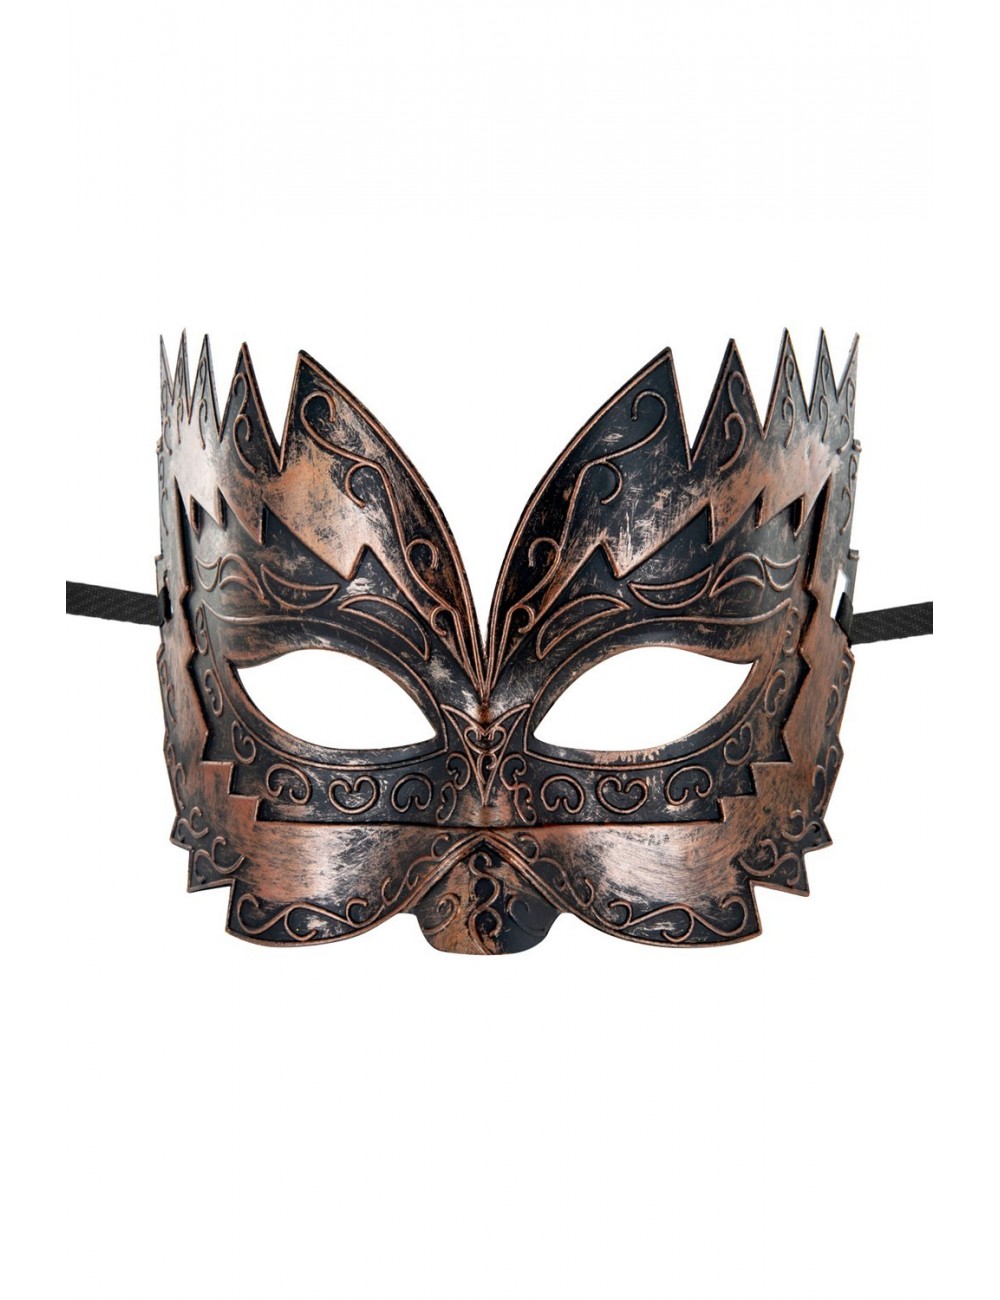 Sextoys - Masques, liens et menottes - Masque haut cuivré Don Giovanni - CC709730020800 - Maskarade